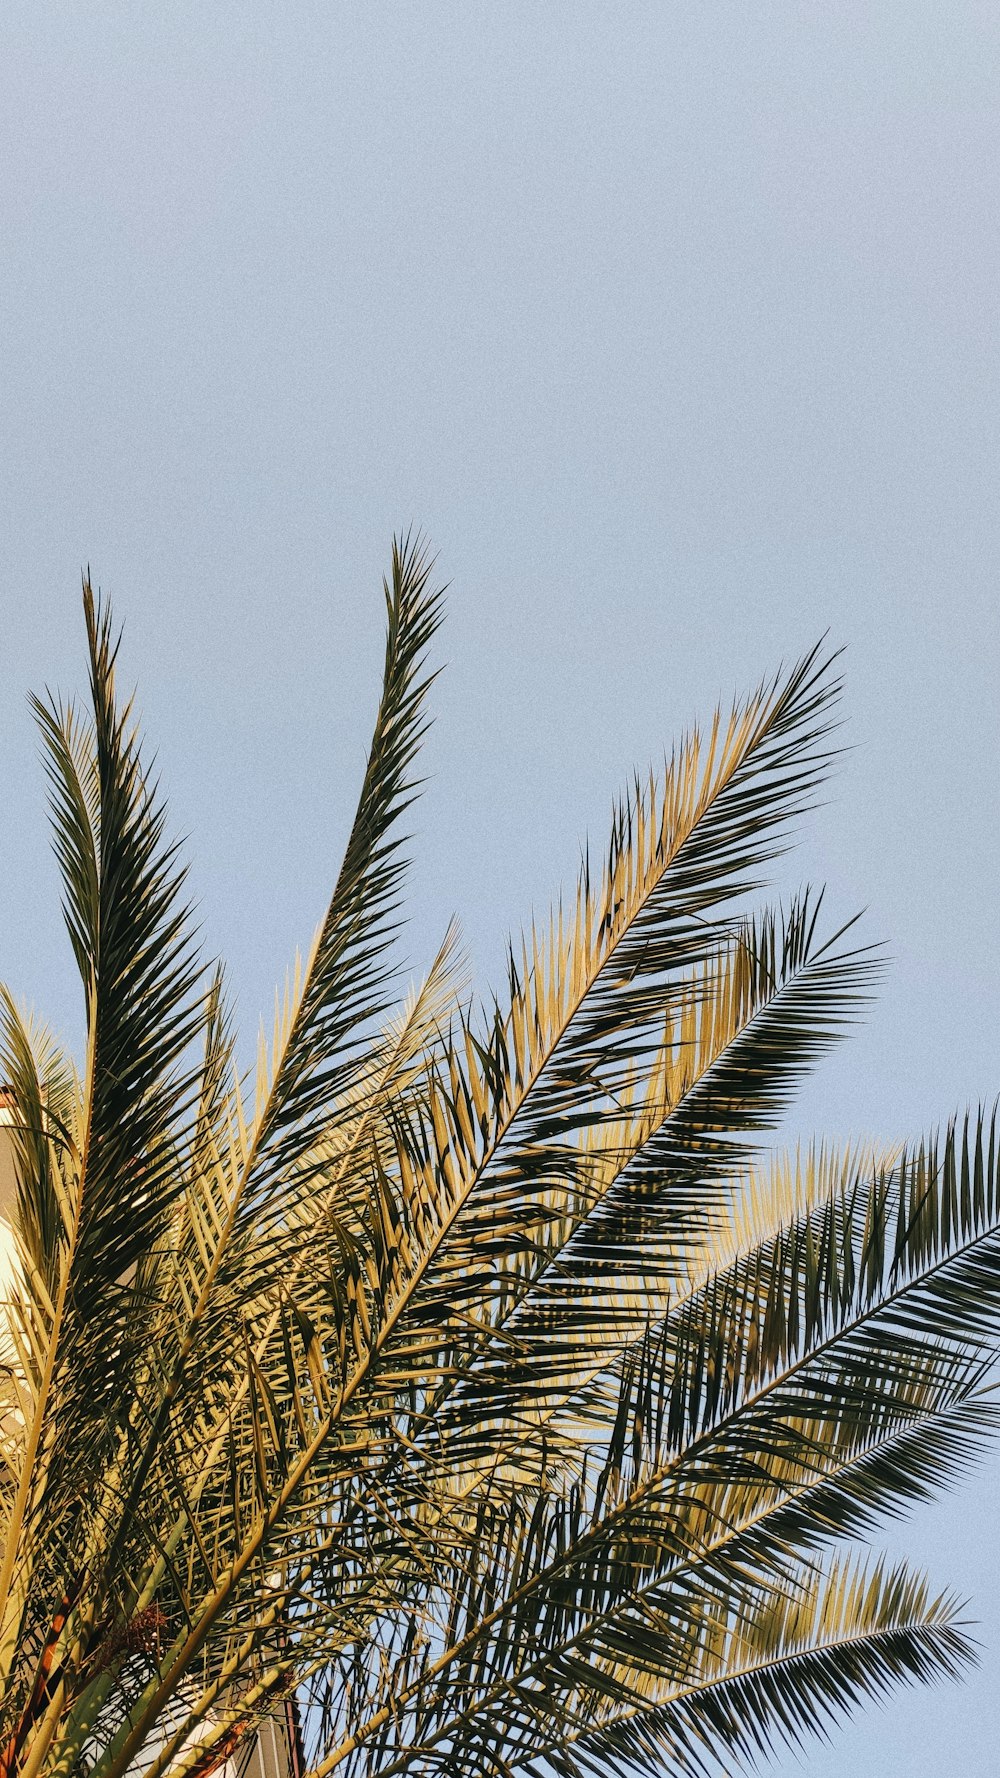 palmeira verde sob o céu azul durante o dia